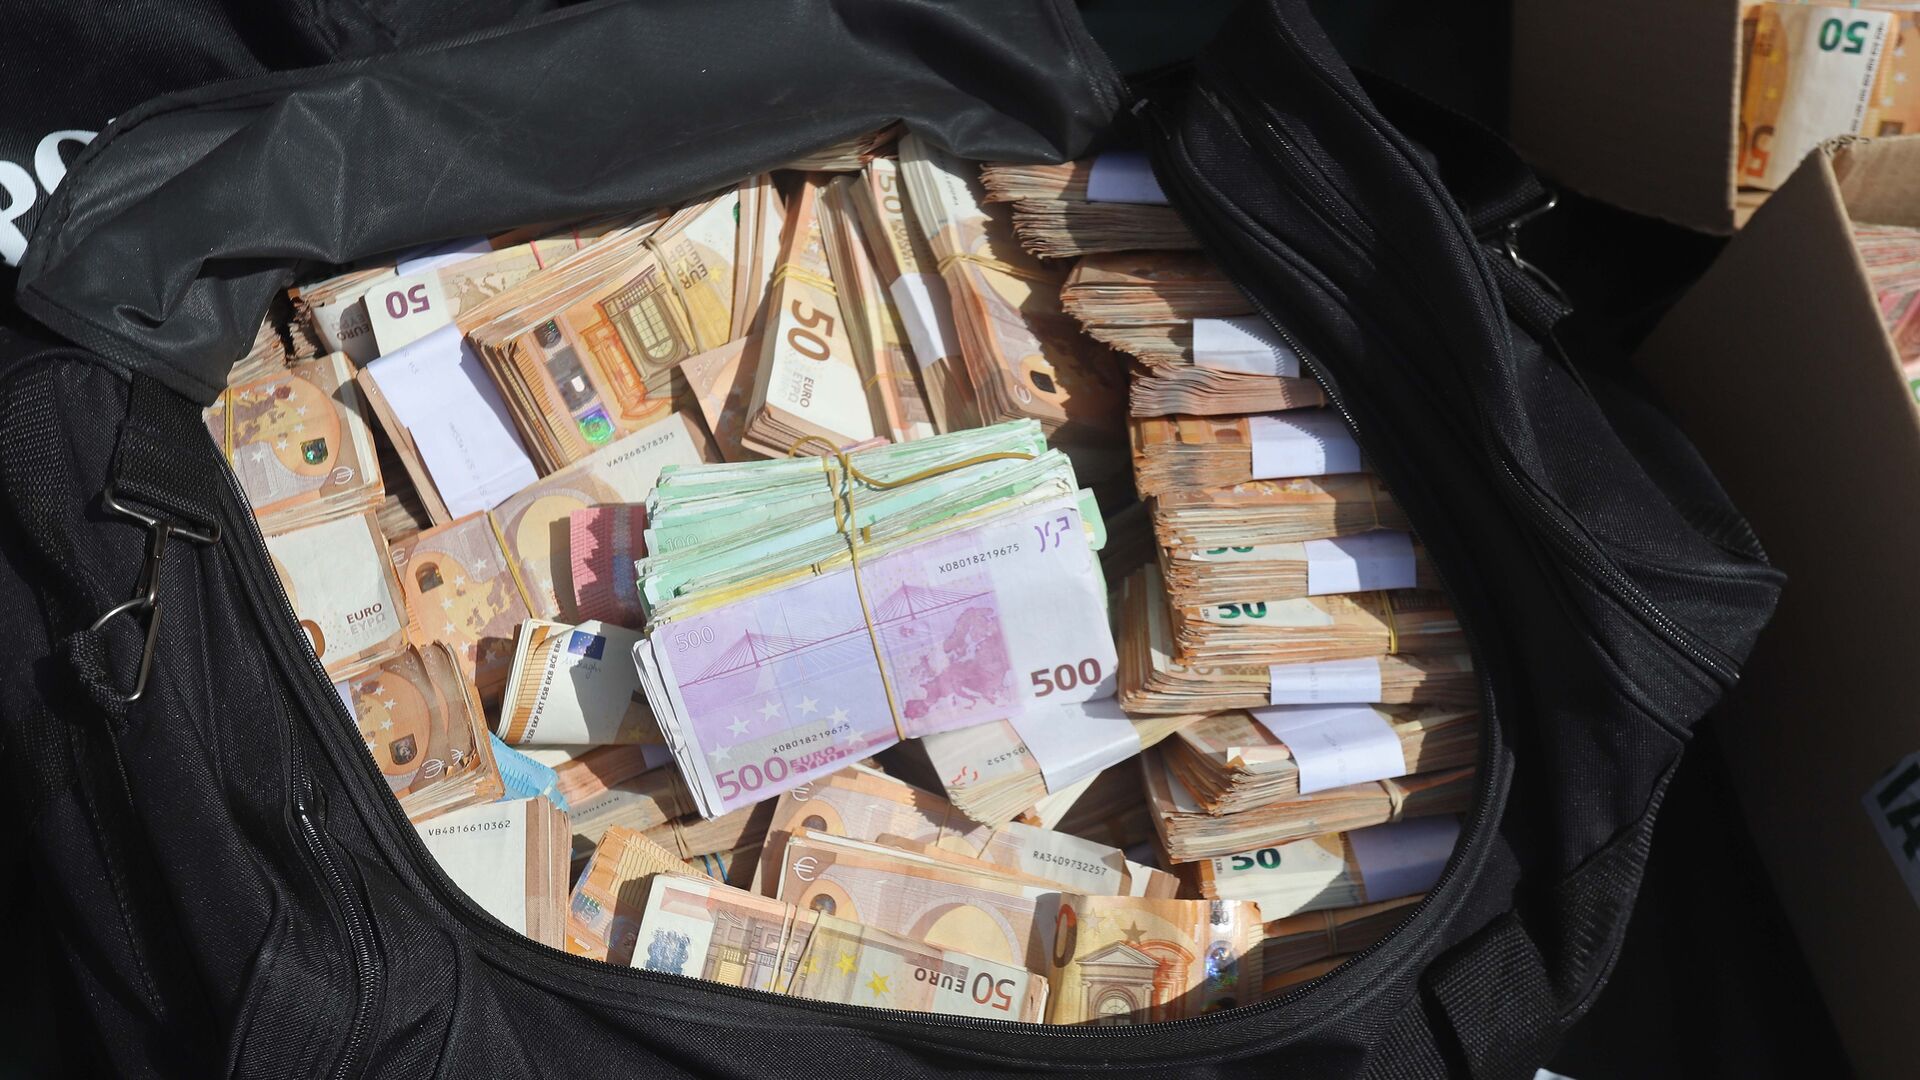 Fotos del dinero incautado en la operaci&oacute;n Jumita de la Guardia Civil en Algeciras